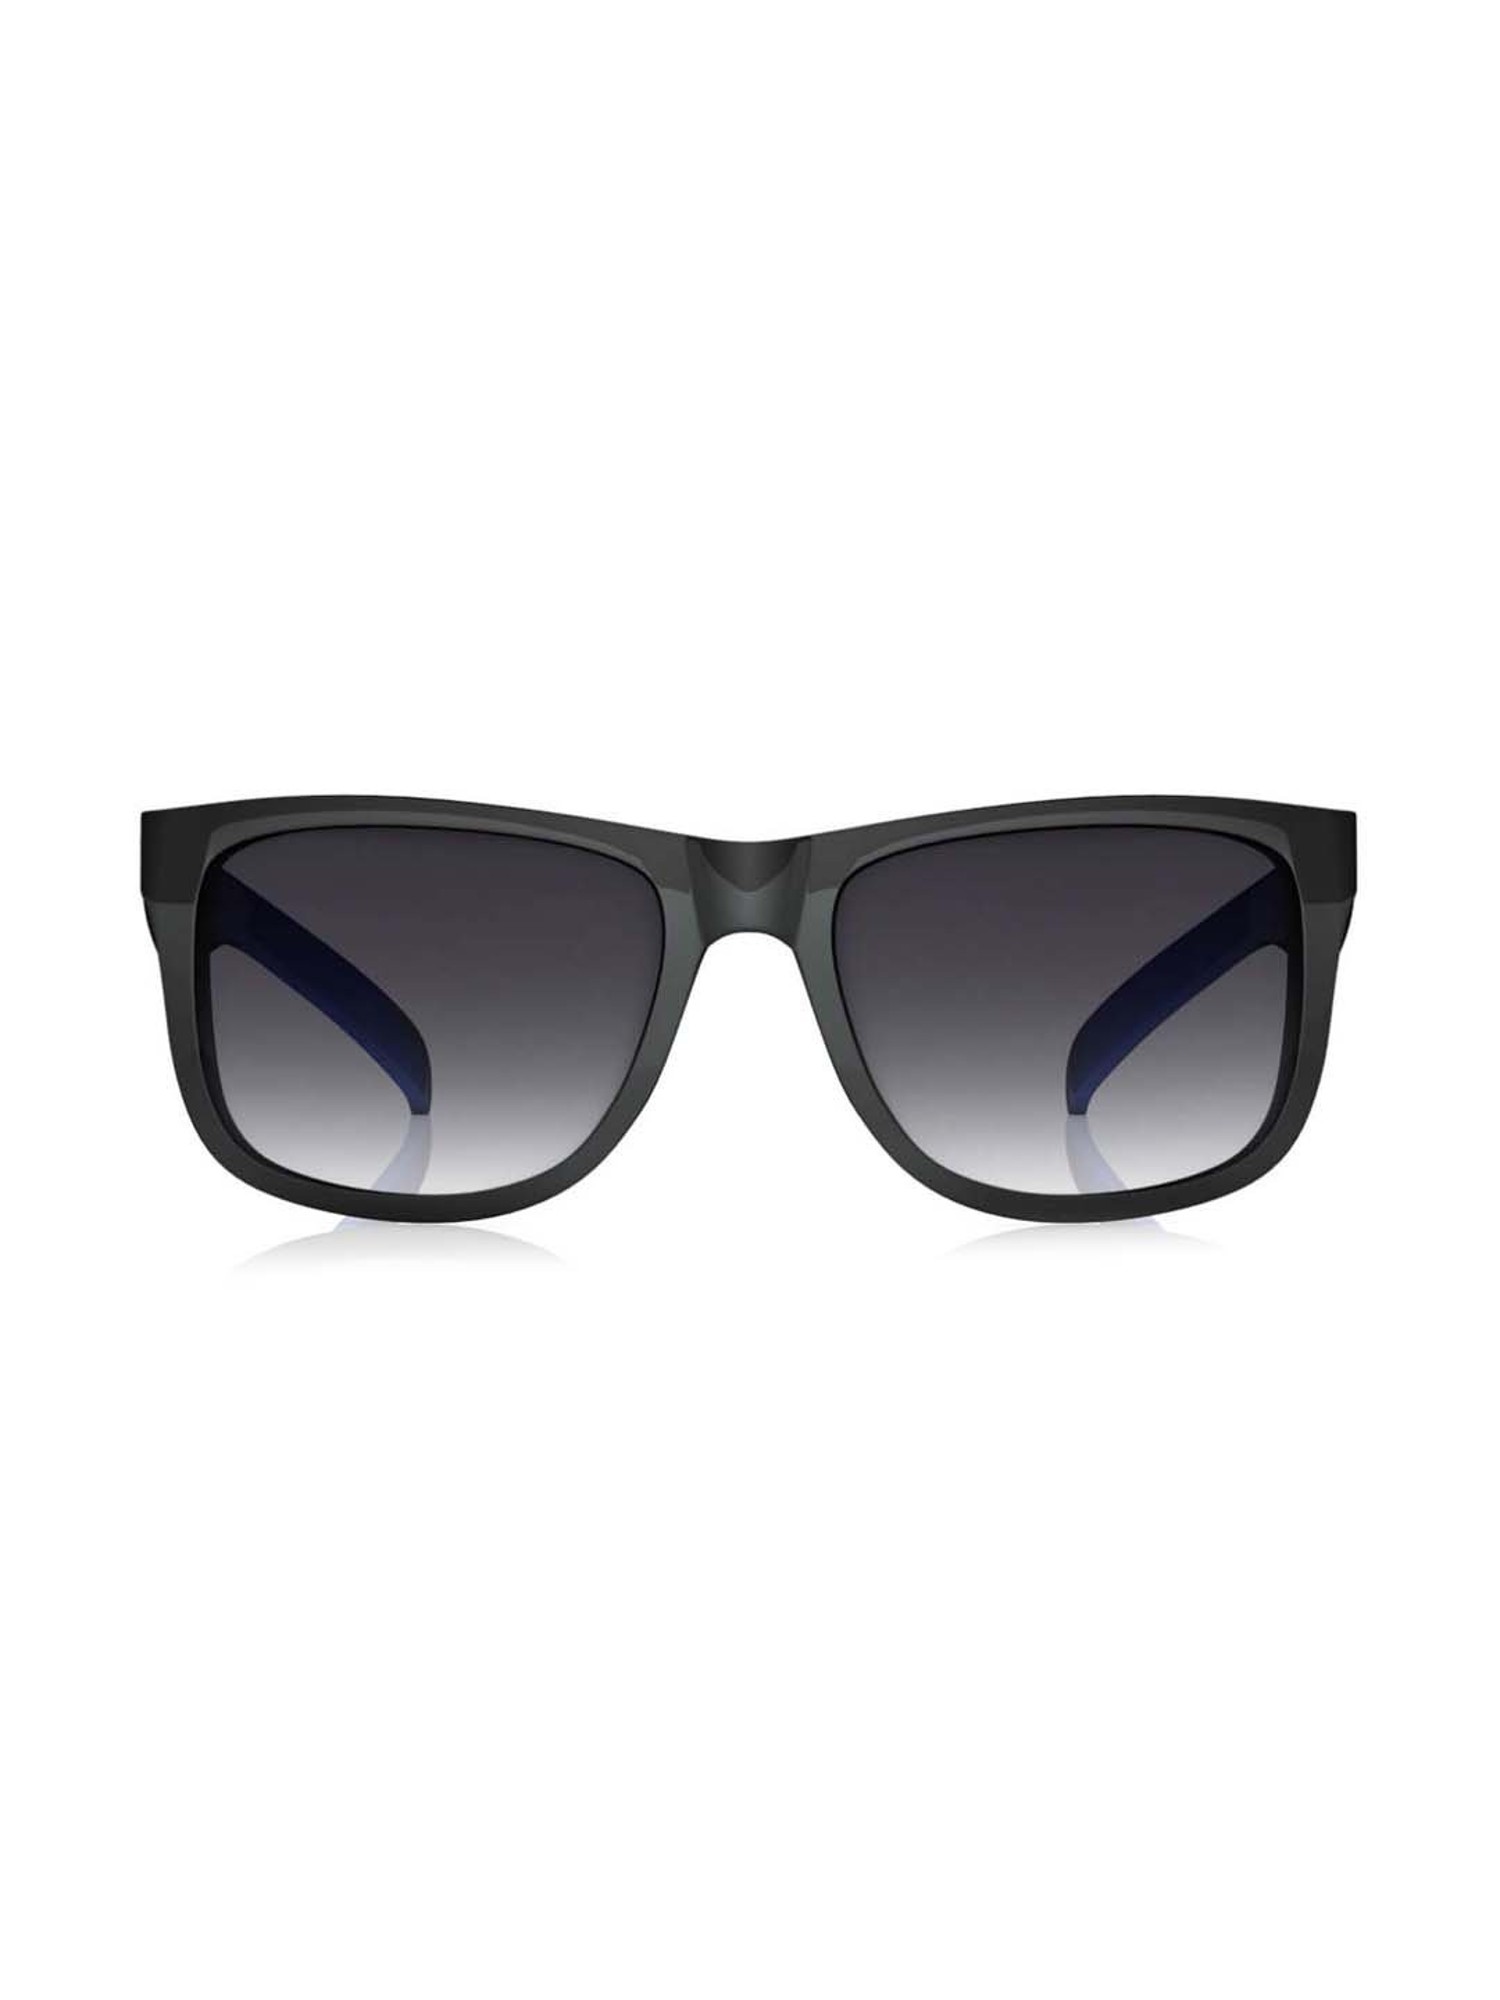 Fastrack Men's Polarized Black Lens Square Sunglasses : Amazon.in: Fashion